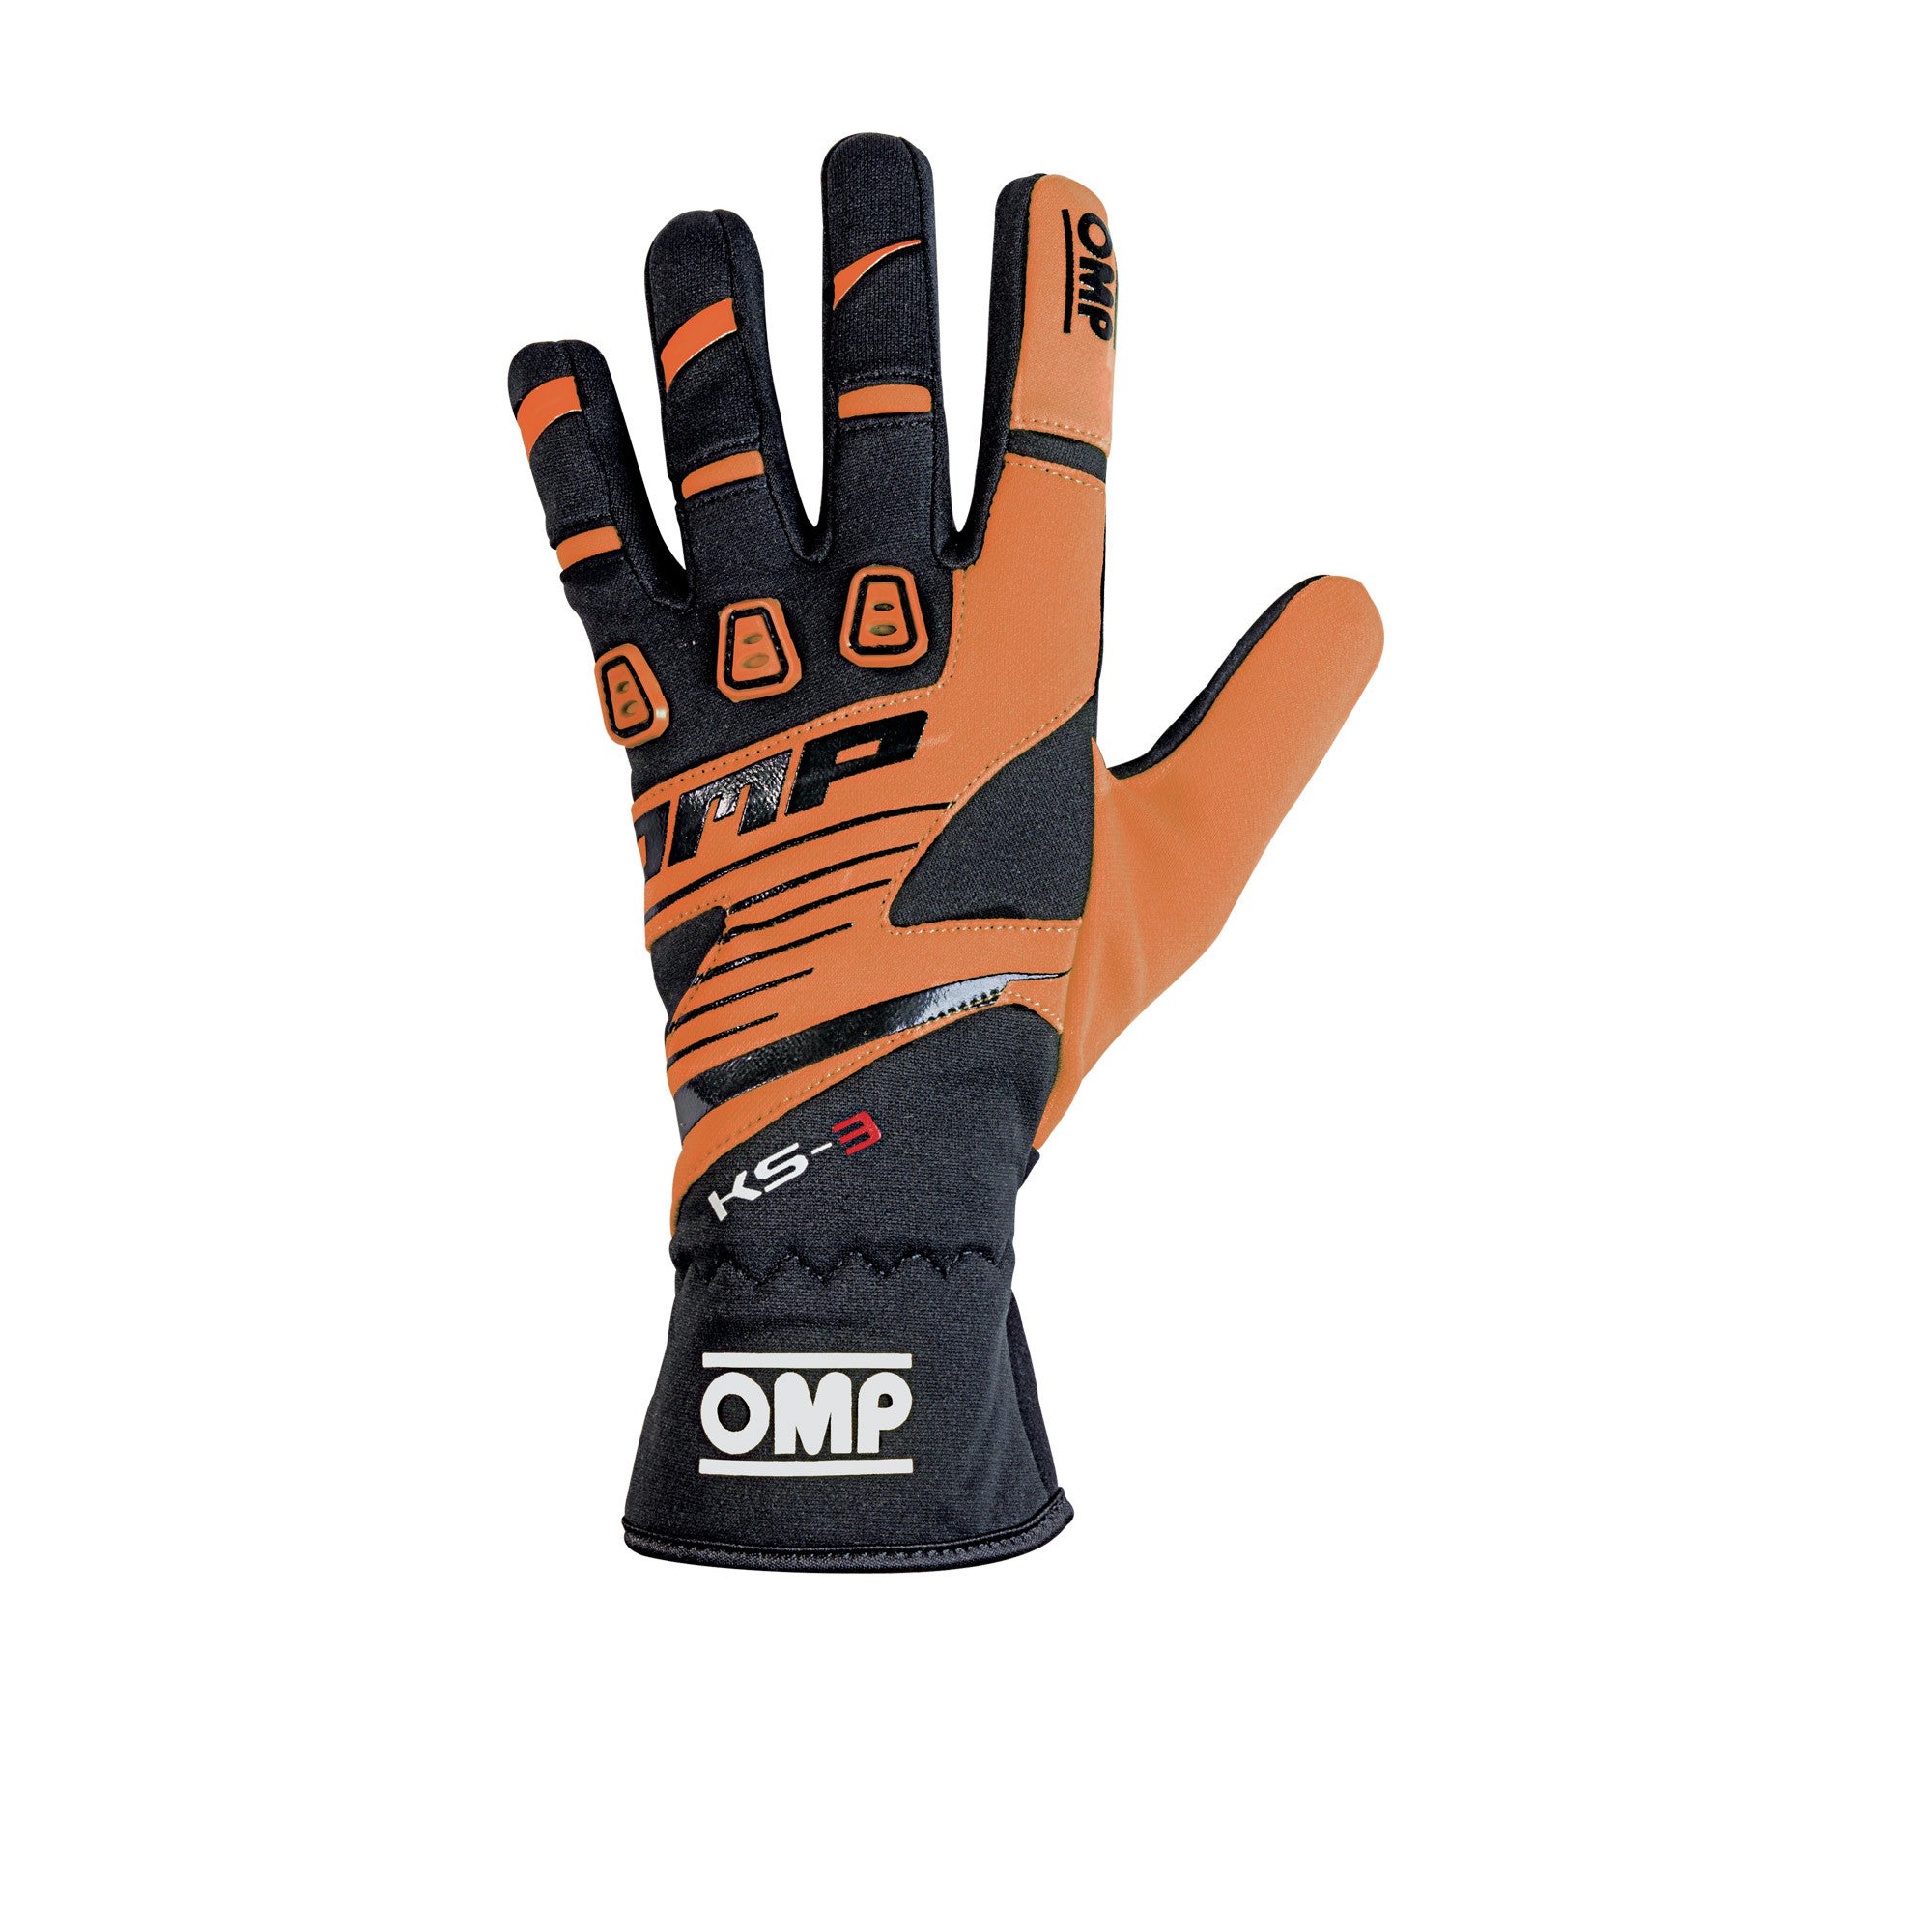 OMP KS-3 Glove